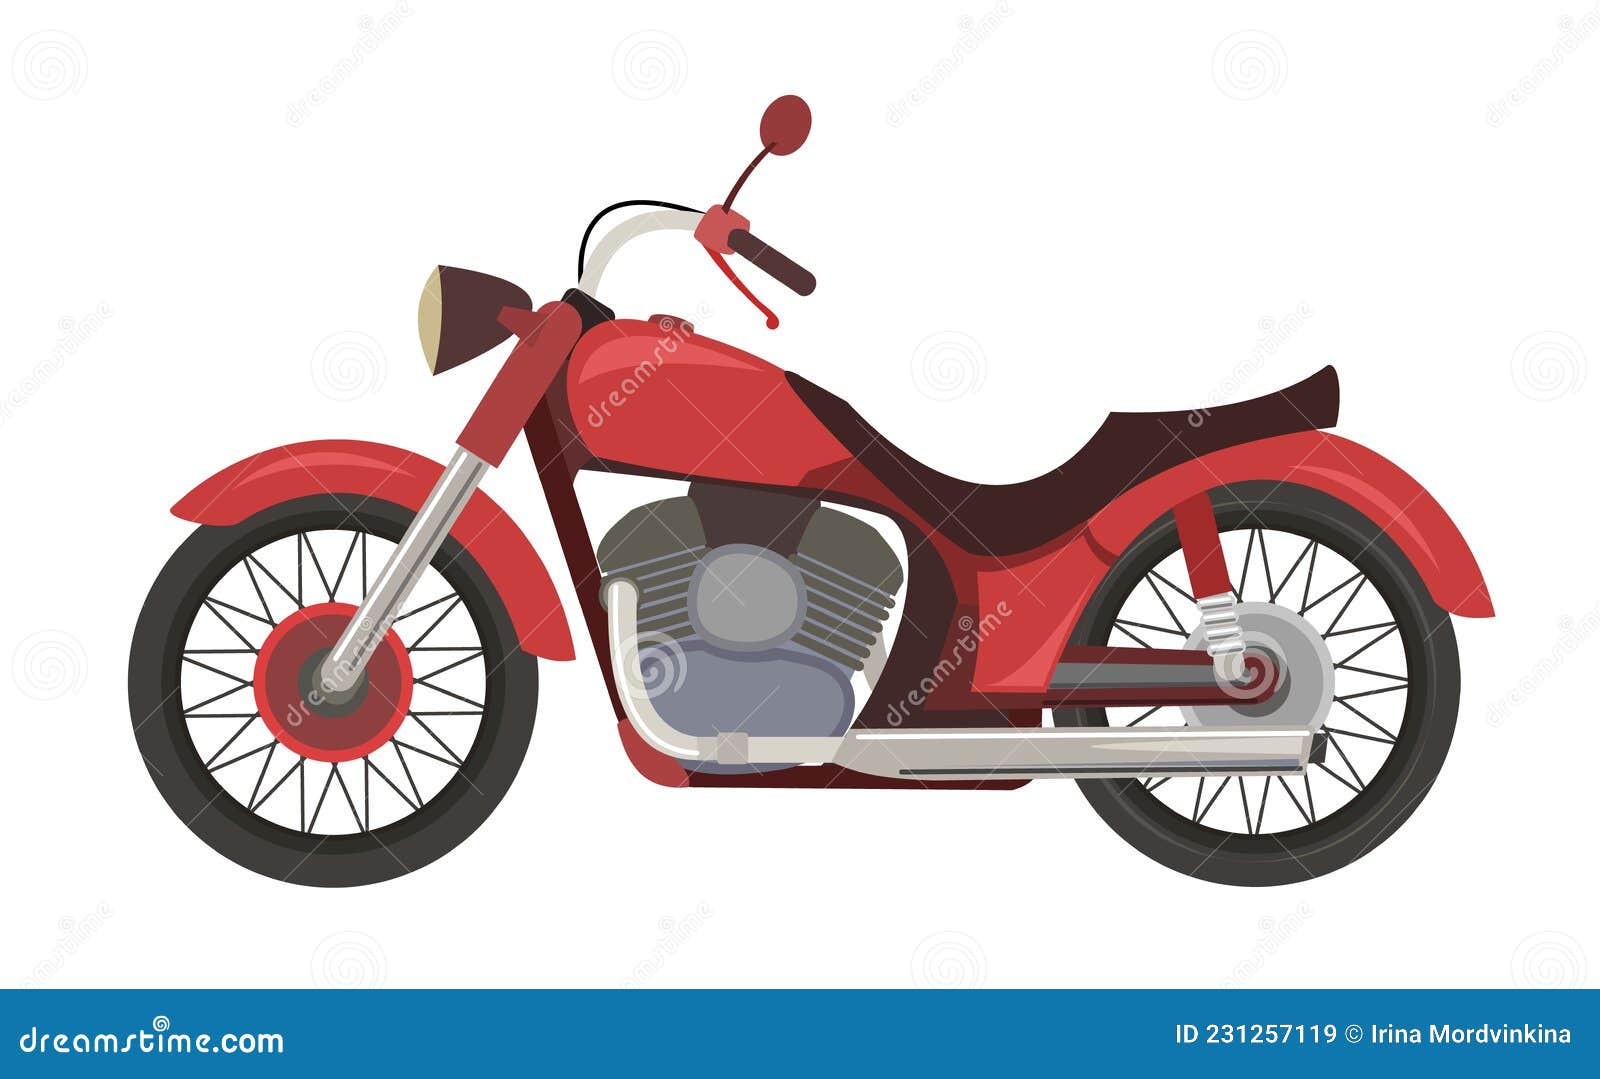 Motocicleta De Desenho Animado Bonito Clássico, Vista Lateral, Isolado.  Royalty Free SVG, Cliparts, Vetores, e Ilustrações Stock. Image 148219907